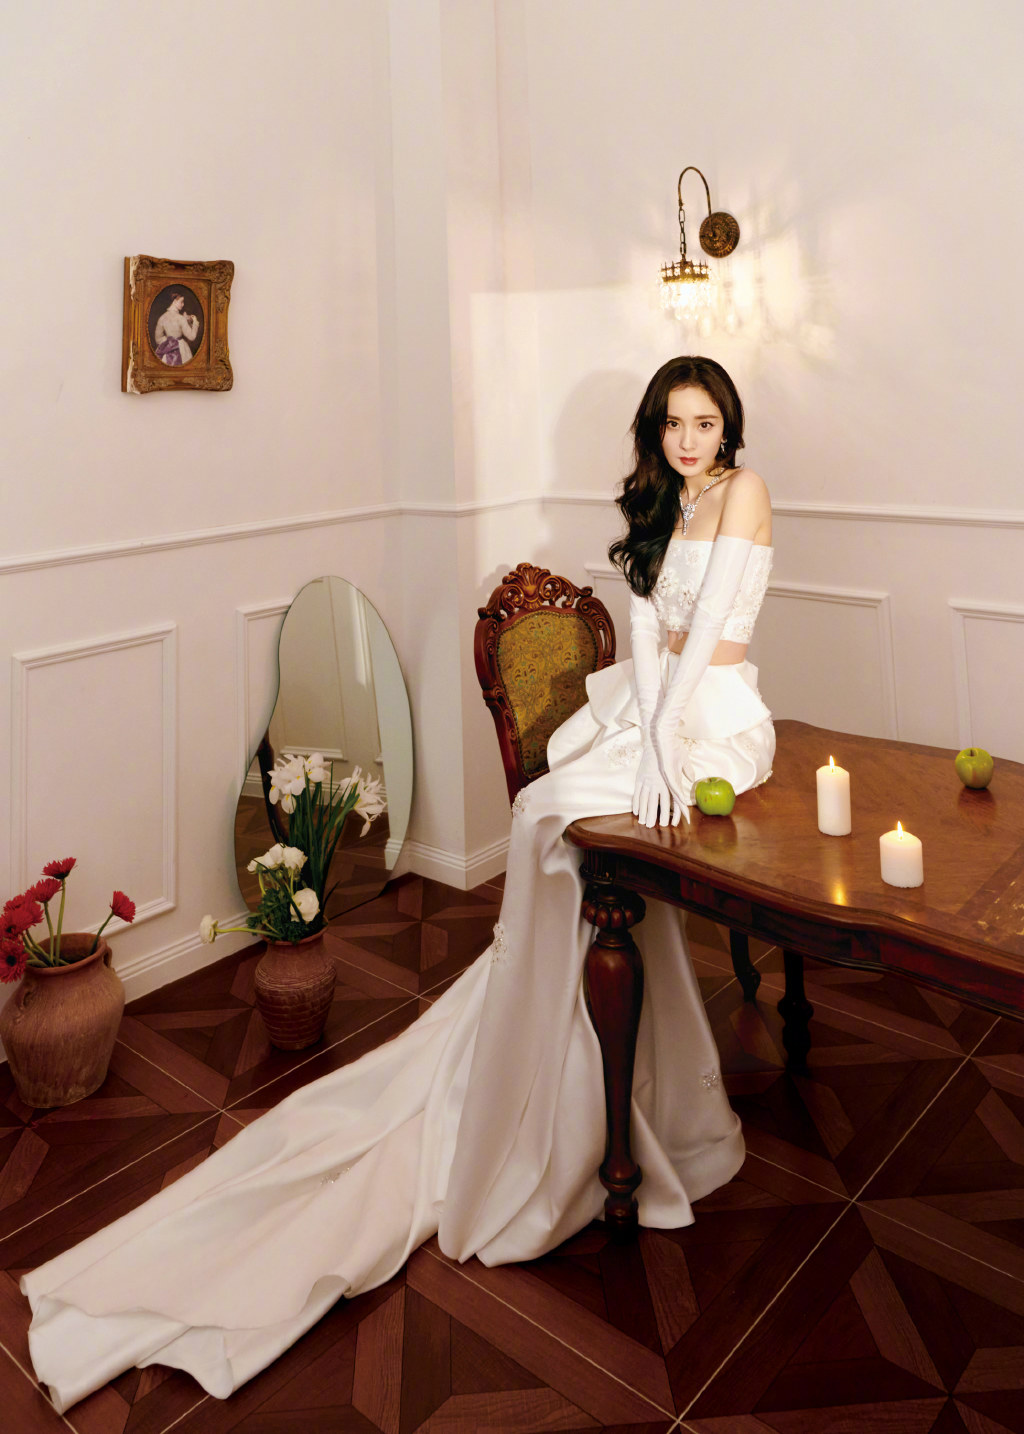 照片中的杨幂身穿两截式白色礼服裙,长发披肩优雅迷人,设计感十足的